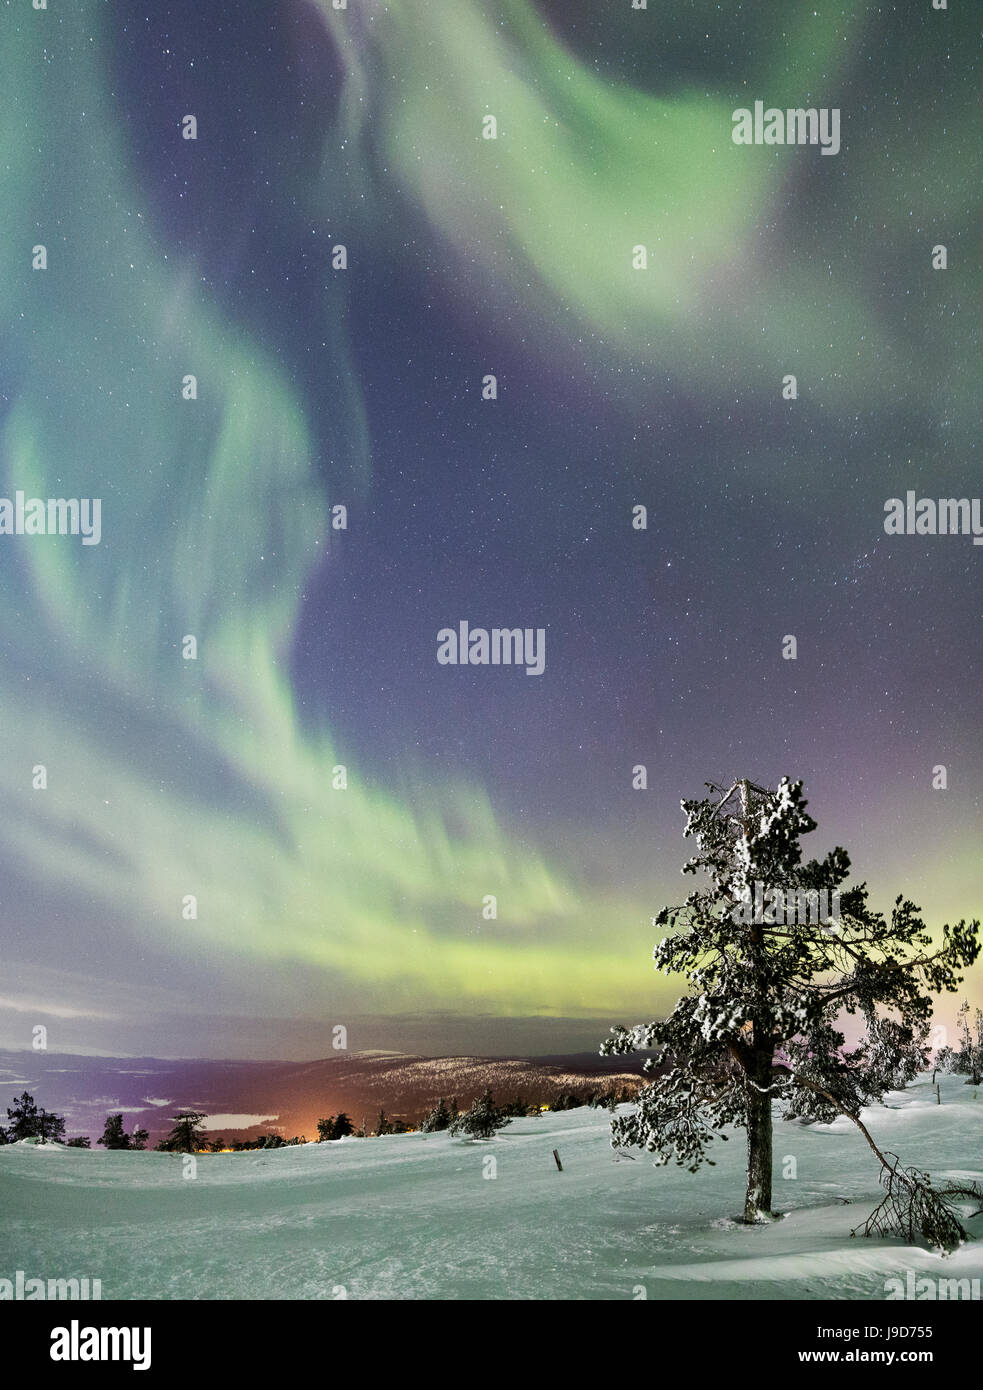 Panorama de Snowy Woods et arbres gelés encadrée par Northern Lights (aurores boréales) et étoiles, Levi, Sirkka, mine Kittila, Finlande Banque D'Images